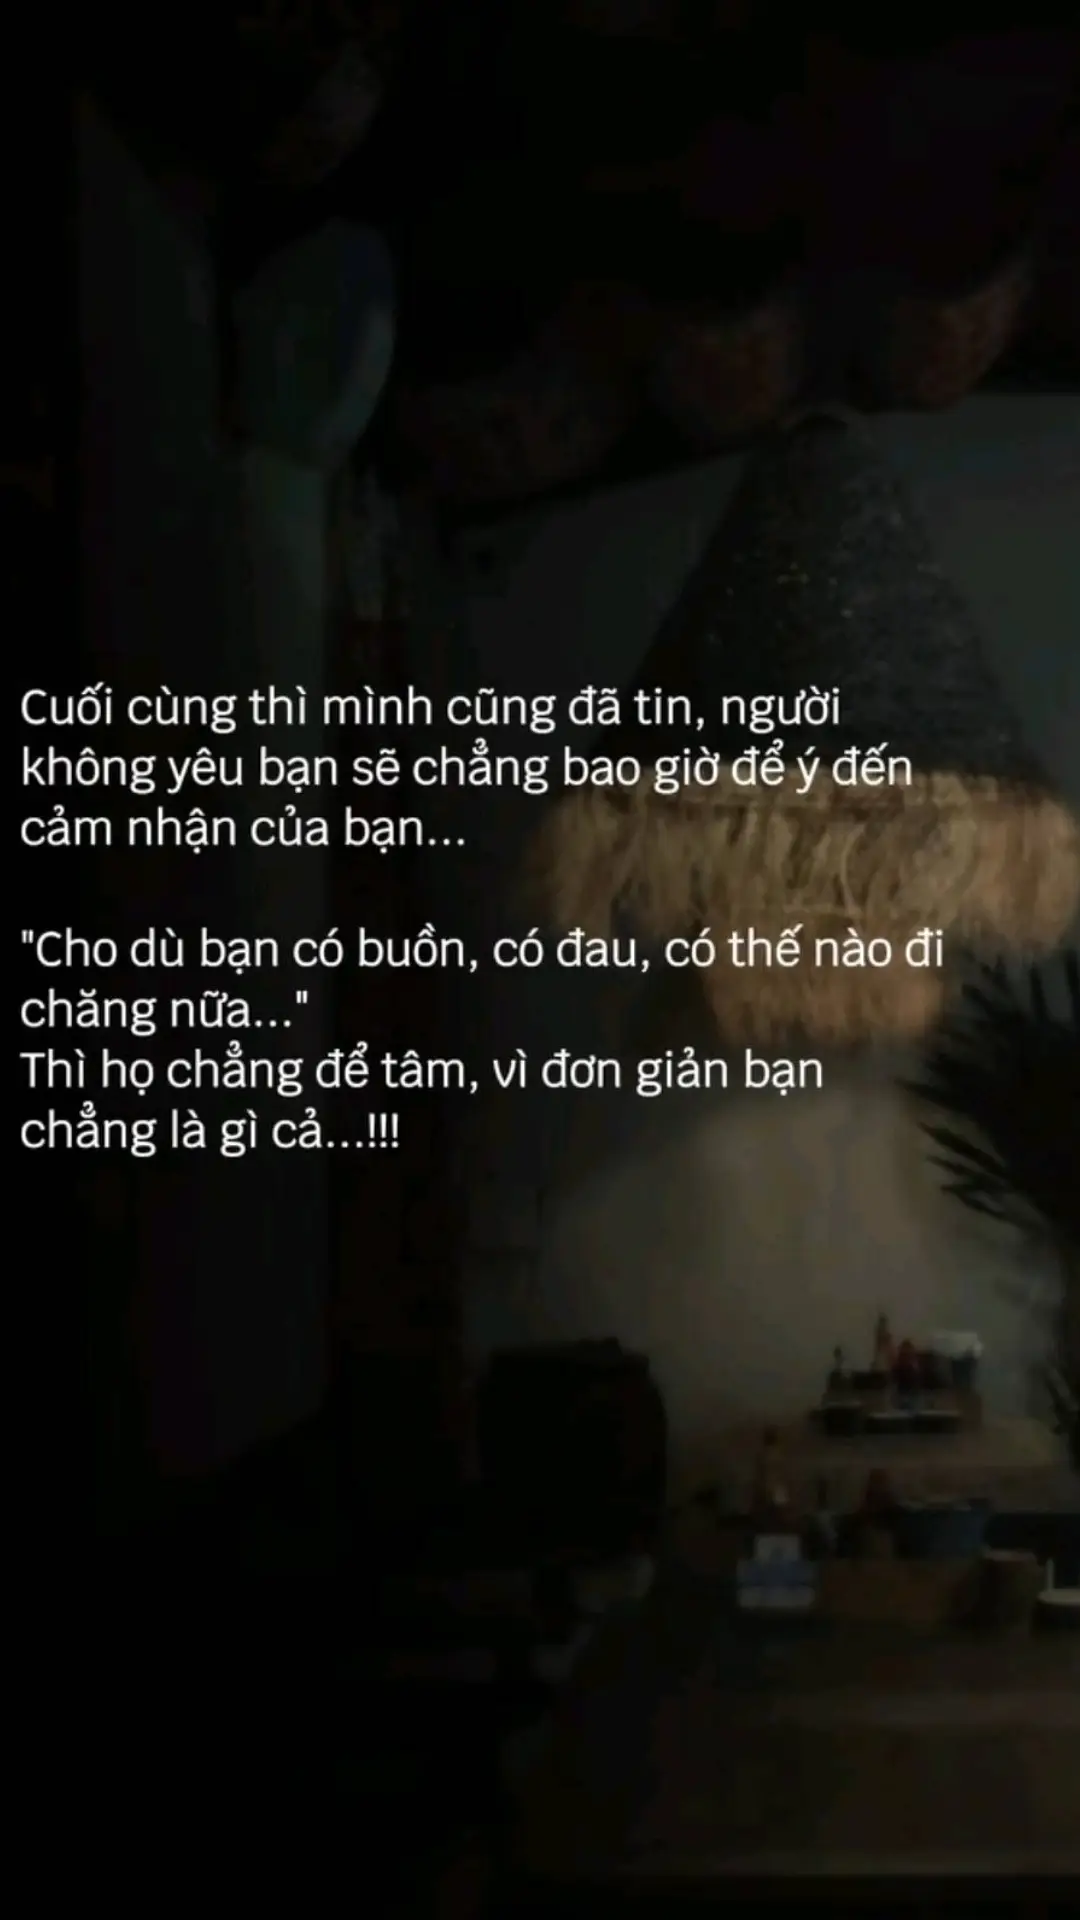 #tamtrang #lothuongmotnguoi #vietnam #buon_tam_trang #buon #camxuc #tinhyeu #yêu #❤️❤️ #thương #bolomotnguoi #xuhuongtiktok #fly #❤️ #❤️❤️❤️ #xuhuong #yêuthương 